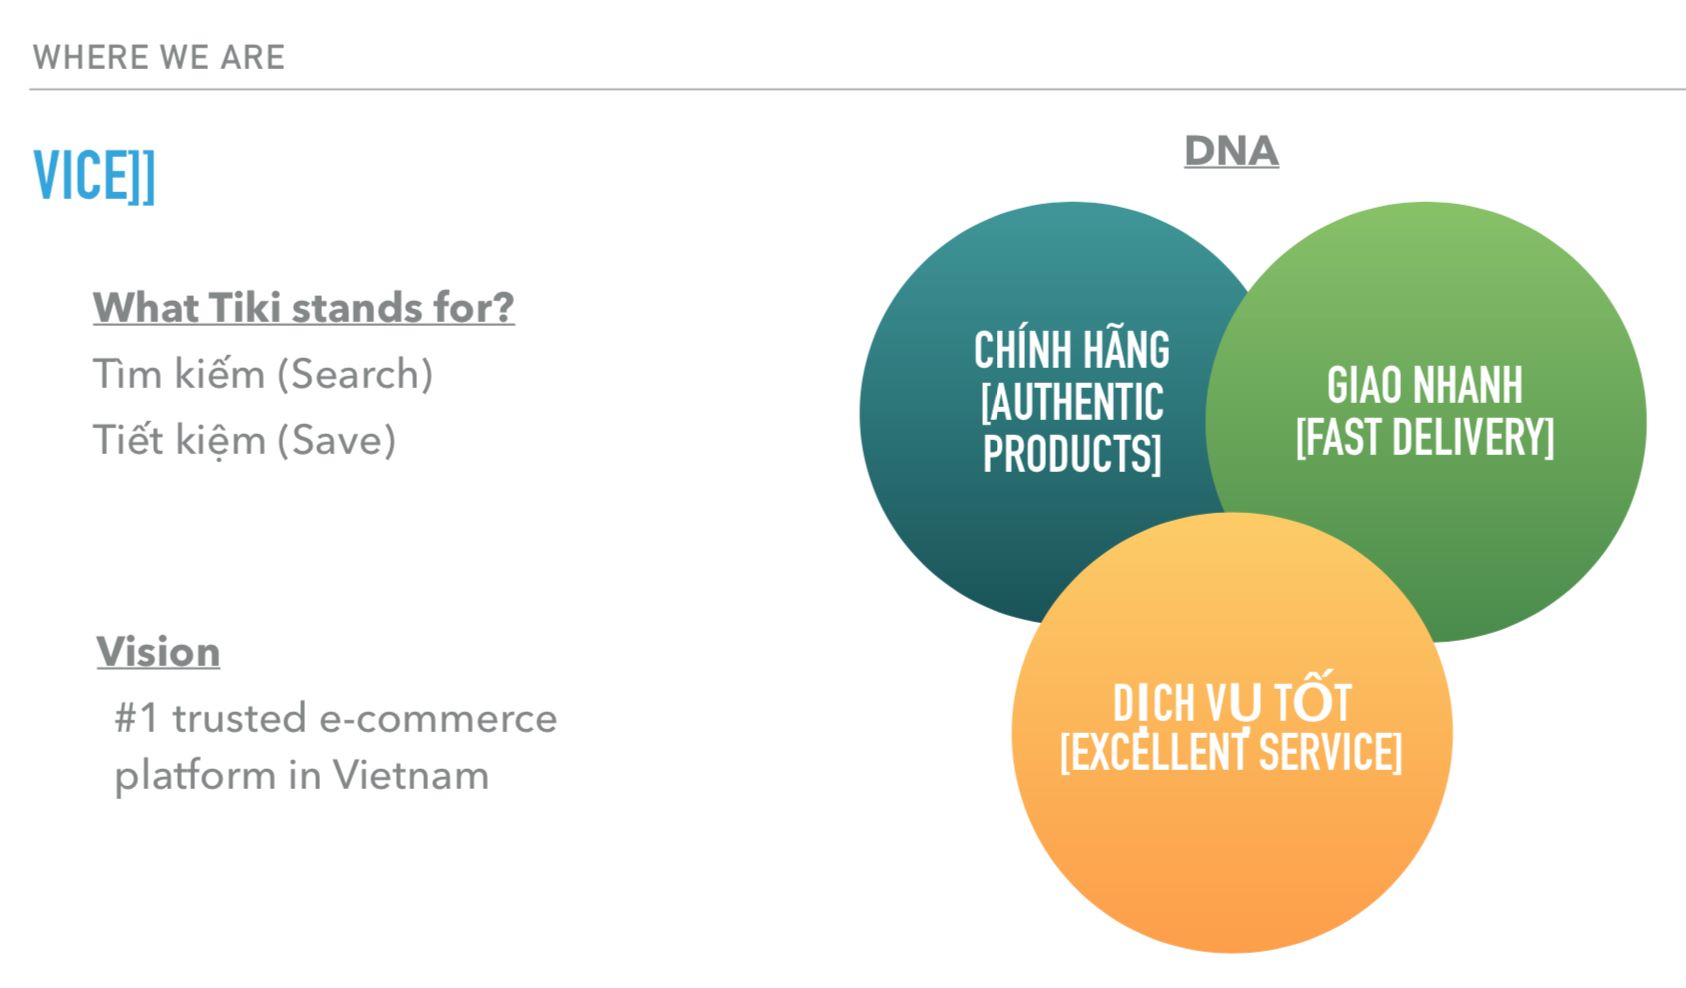 Brand DNA của thương hiệu Tiki bao gồm: sản phẩm chính hãng, giao hàng nhanh, và dịch vụ tốt 